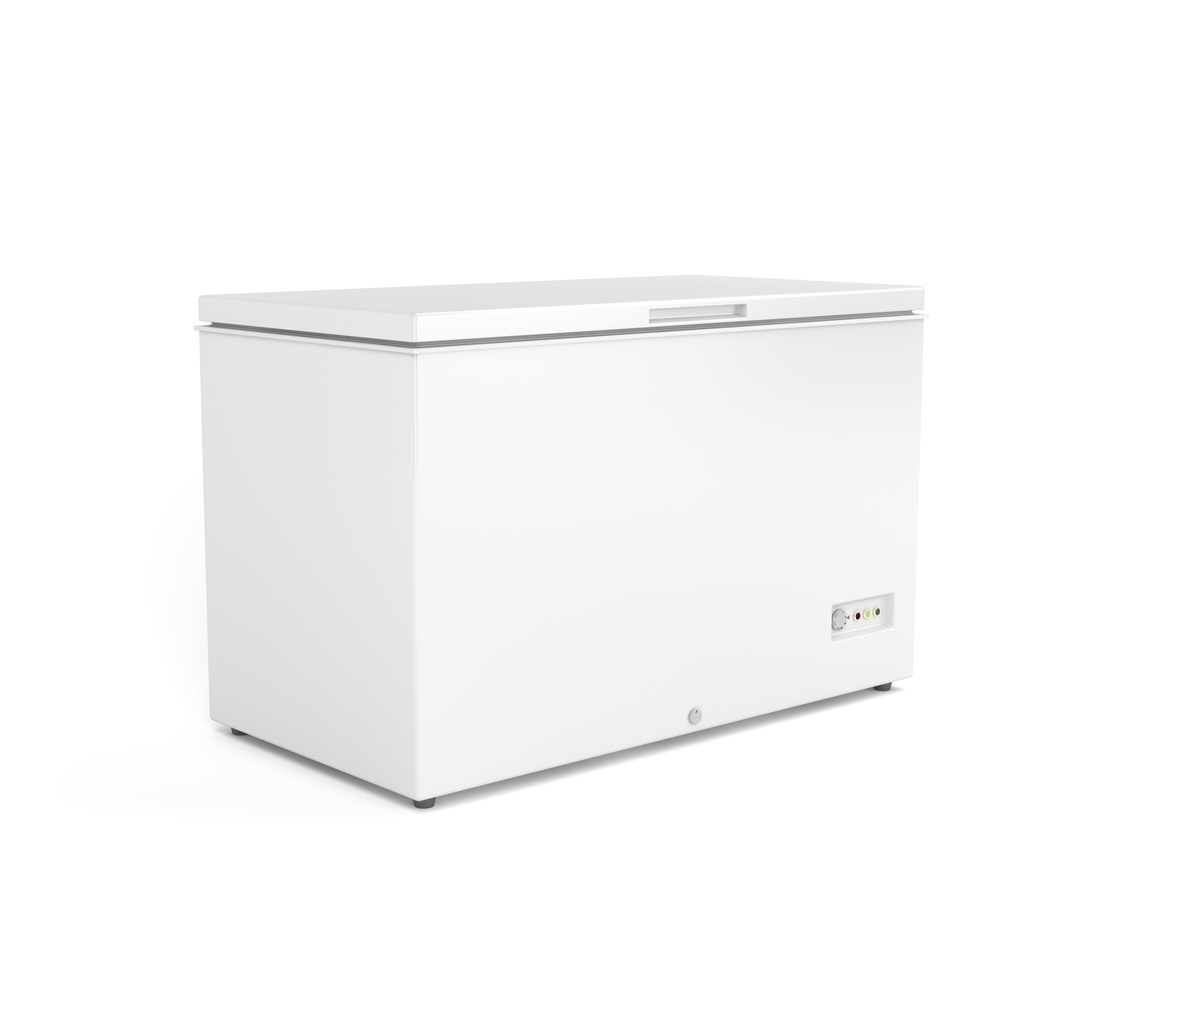 容量別 小型冷凍庫 ホームフリーザー おすすめ14選 サイズの目安も解説 マイナビおすすめナビ